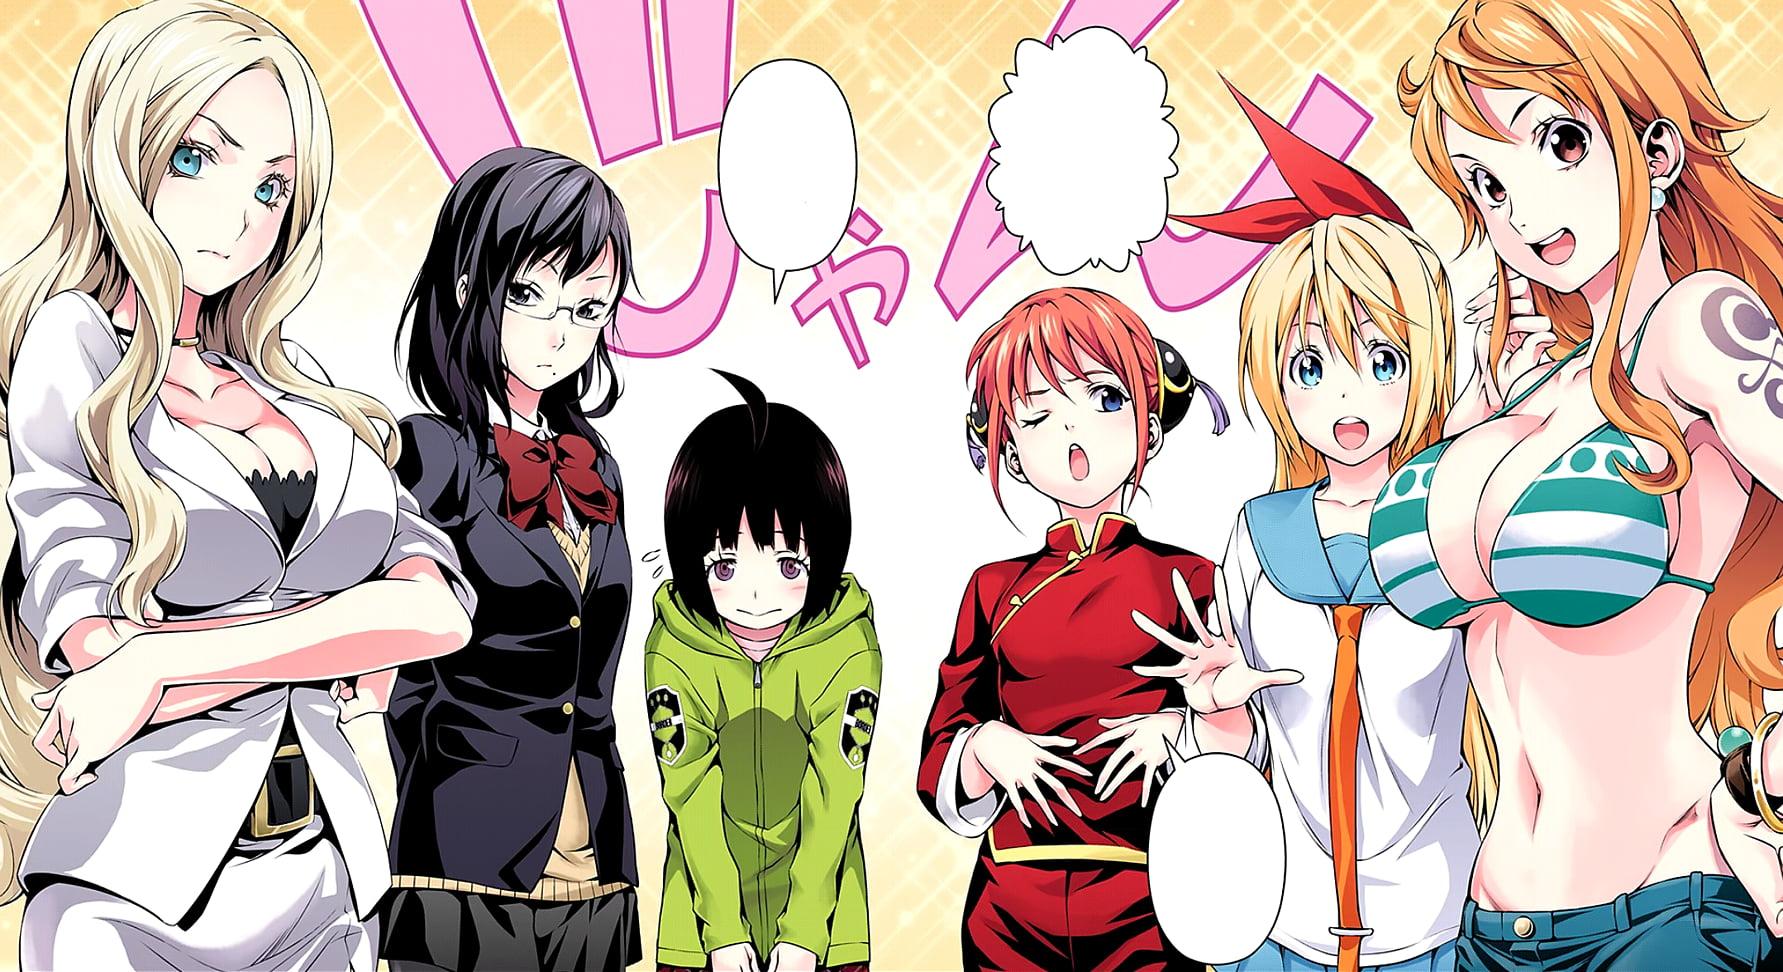 Female anime character illustration, anime, Shonen Jump, Irina